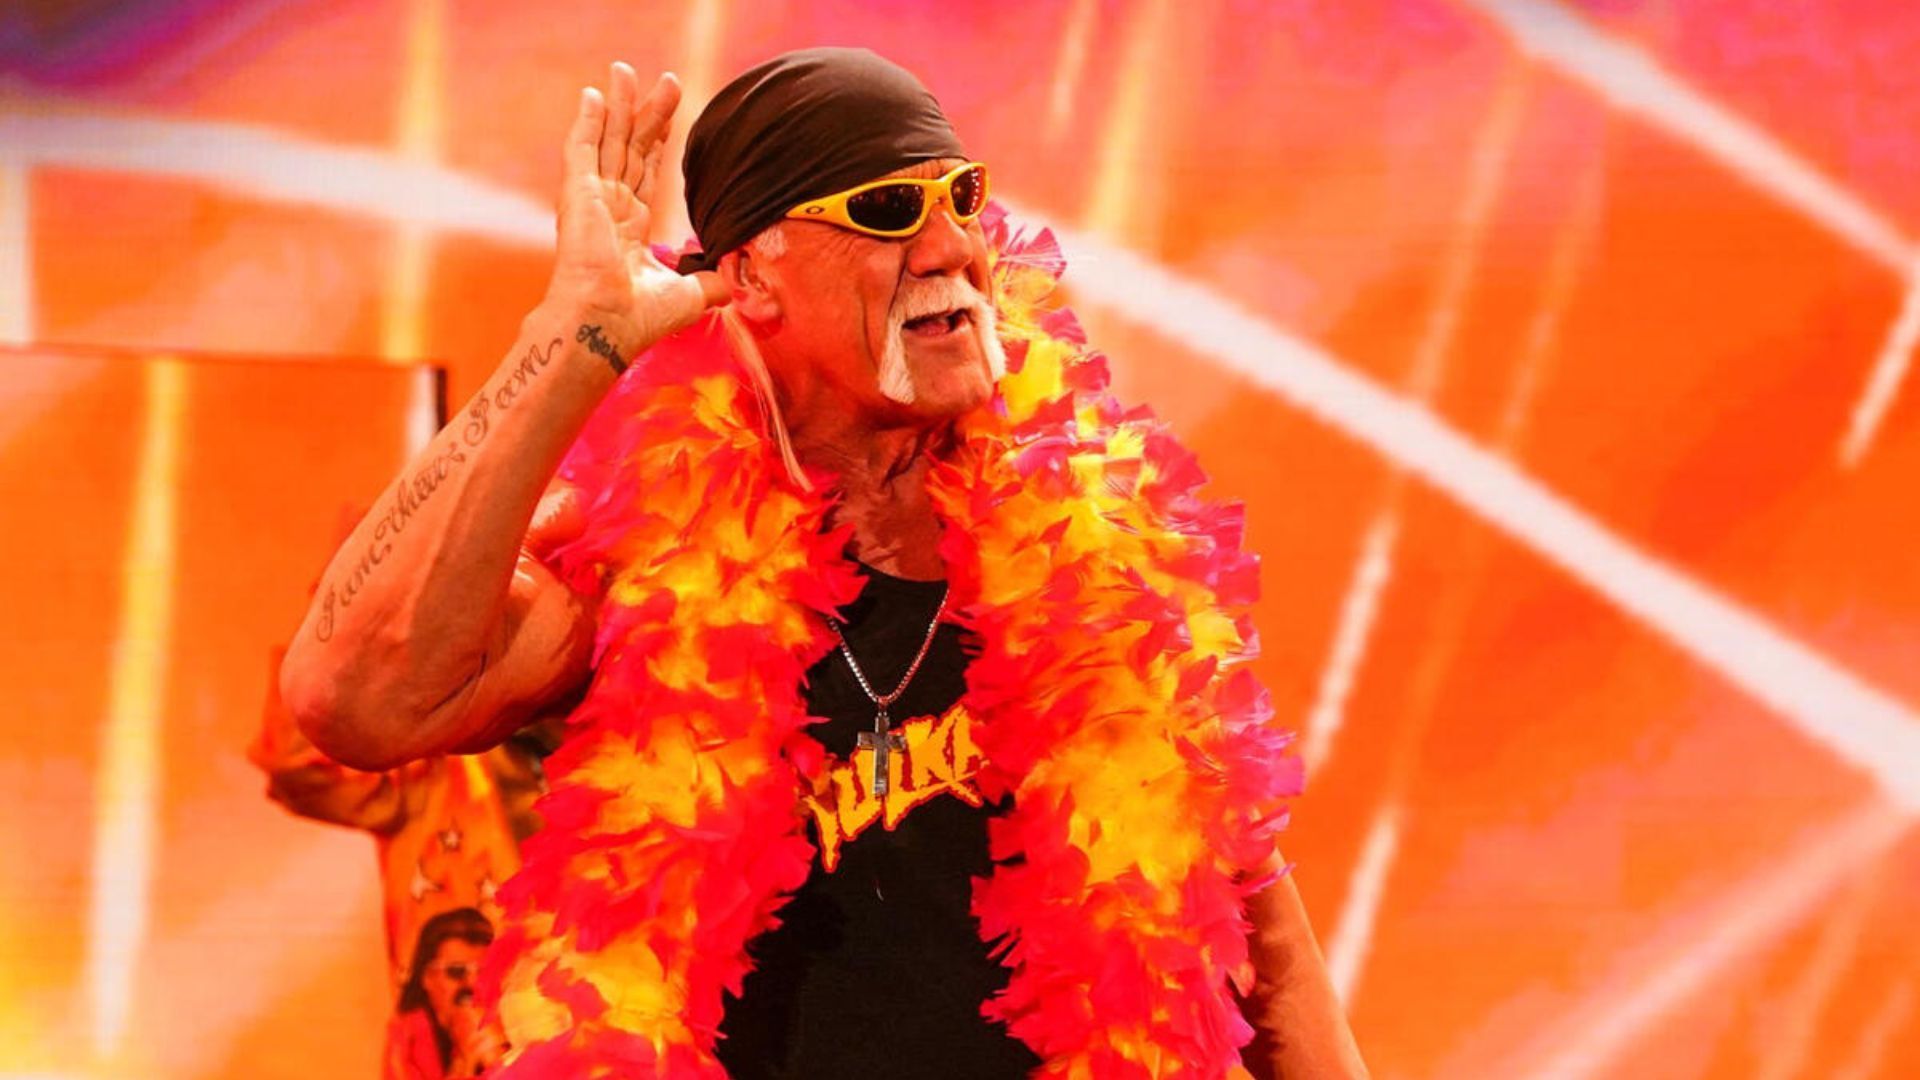 Hulk Hogan is a professional wrestling legend [Image Credits: wwe.com]